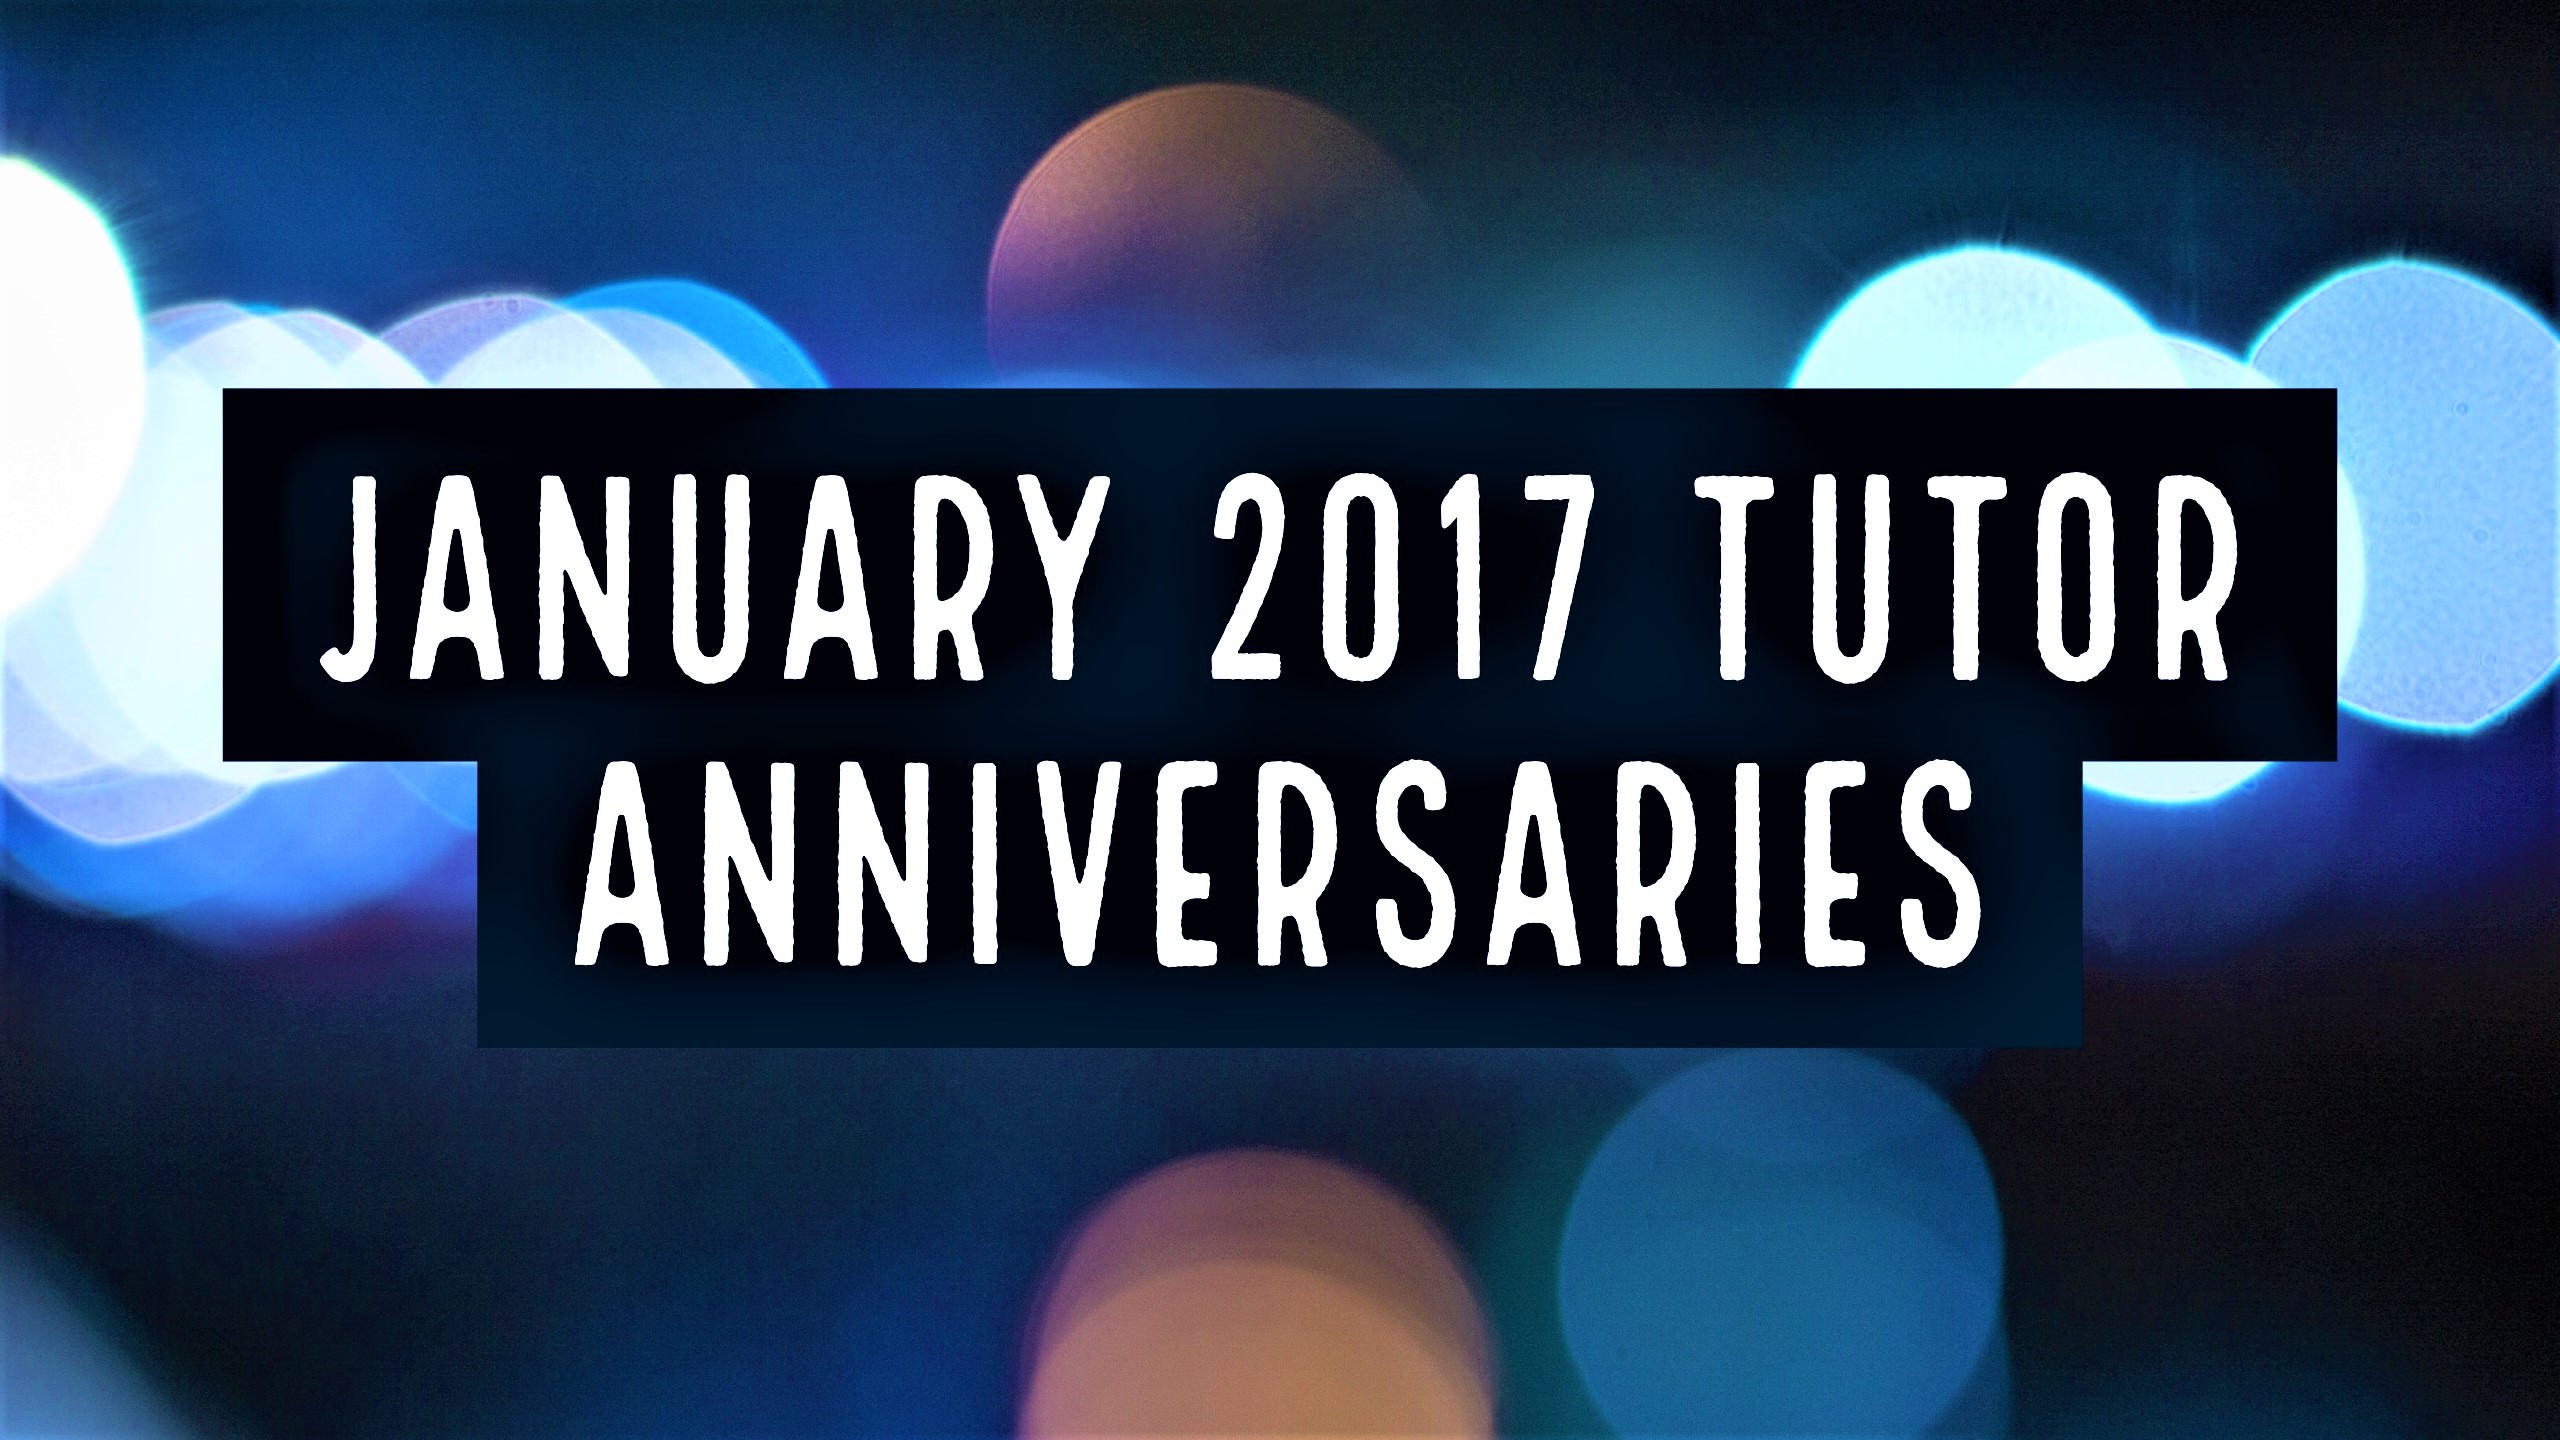 Tutor Anniversaries January 2017